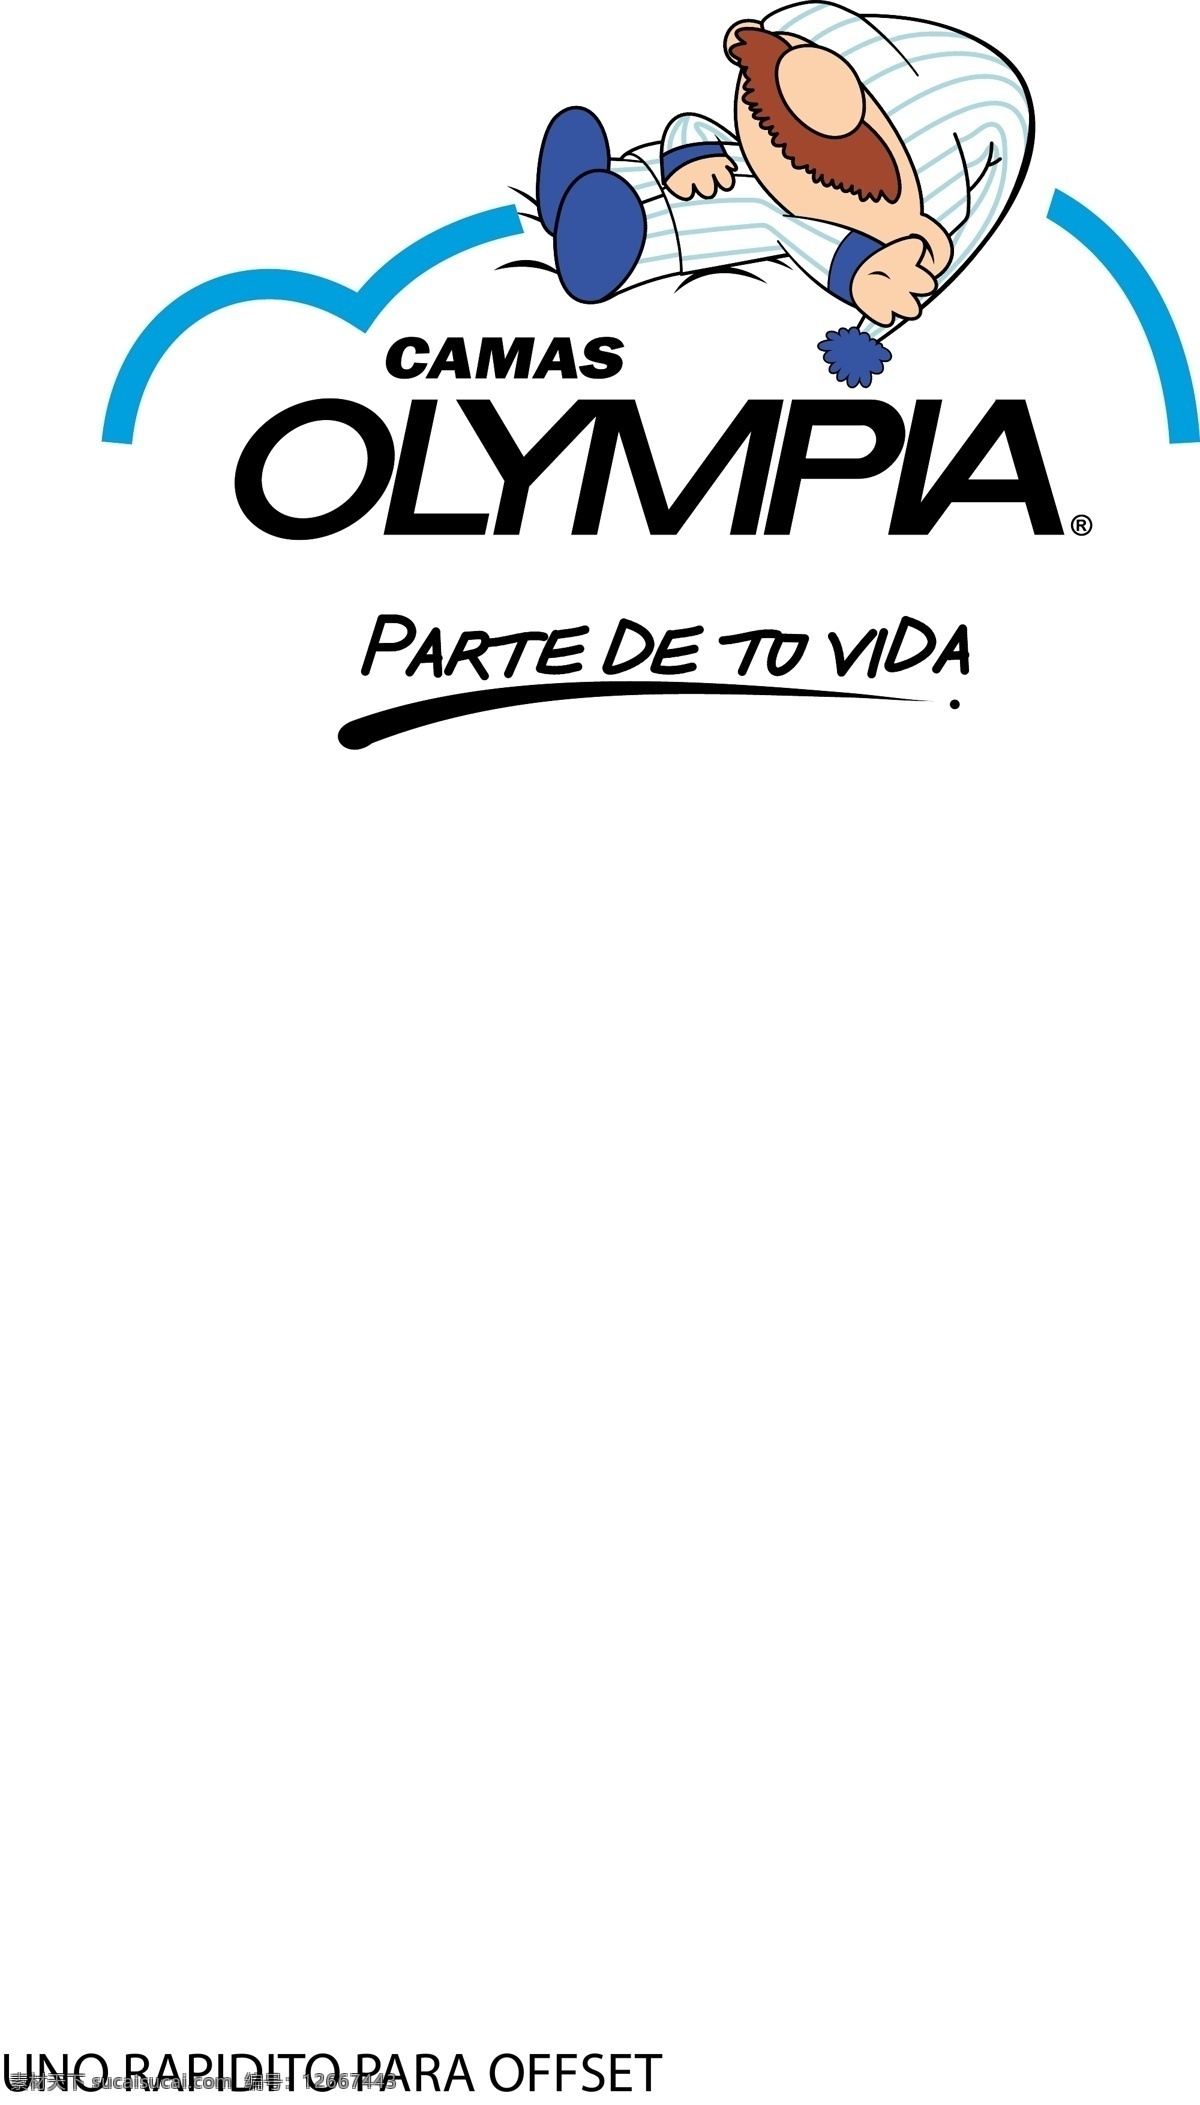 卡马 斯 奥林匹亚 标识 公司 免费 品牌 品牌标识 商标 矢量标志下载 免费矢量标识 矢量 psd源文件 logo设计